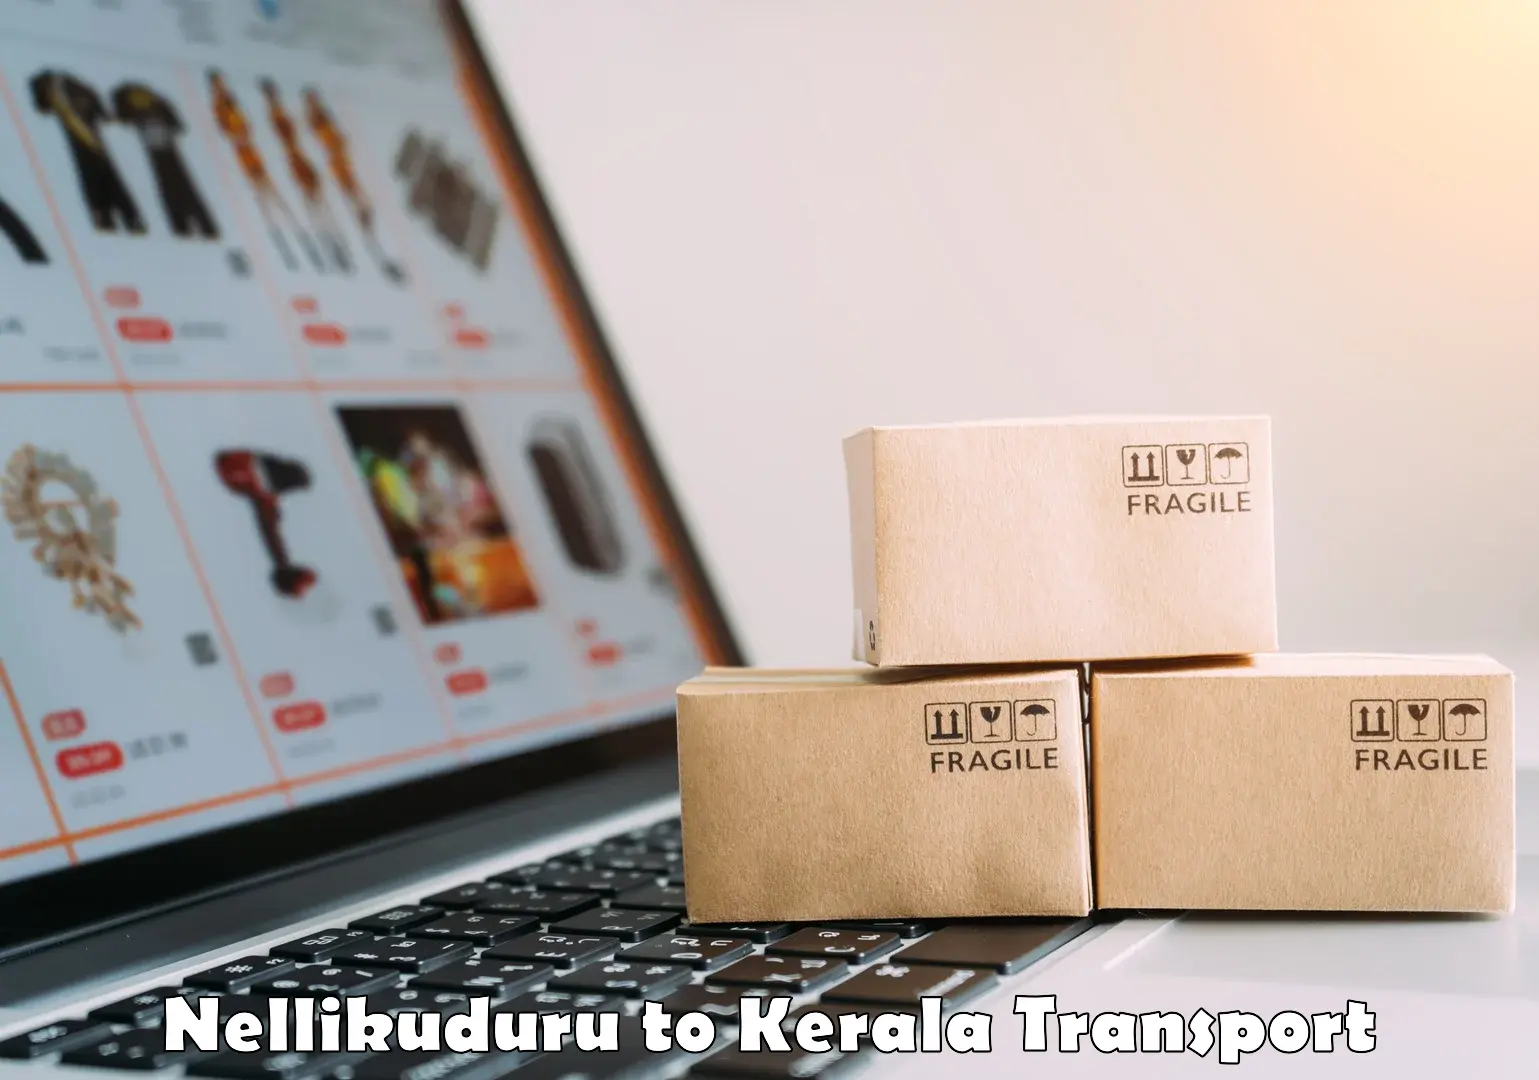 Nearest transport service Nellikuduru to Kerala